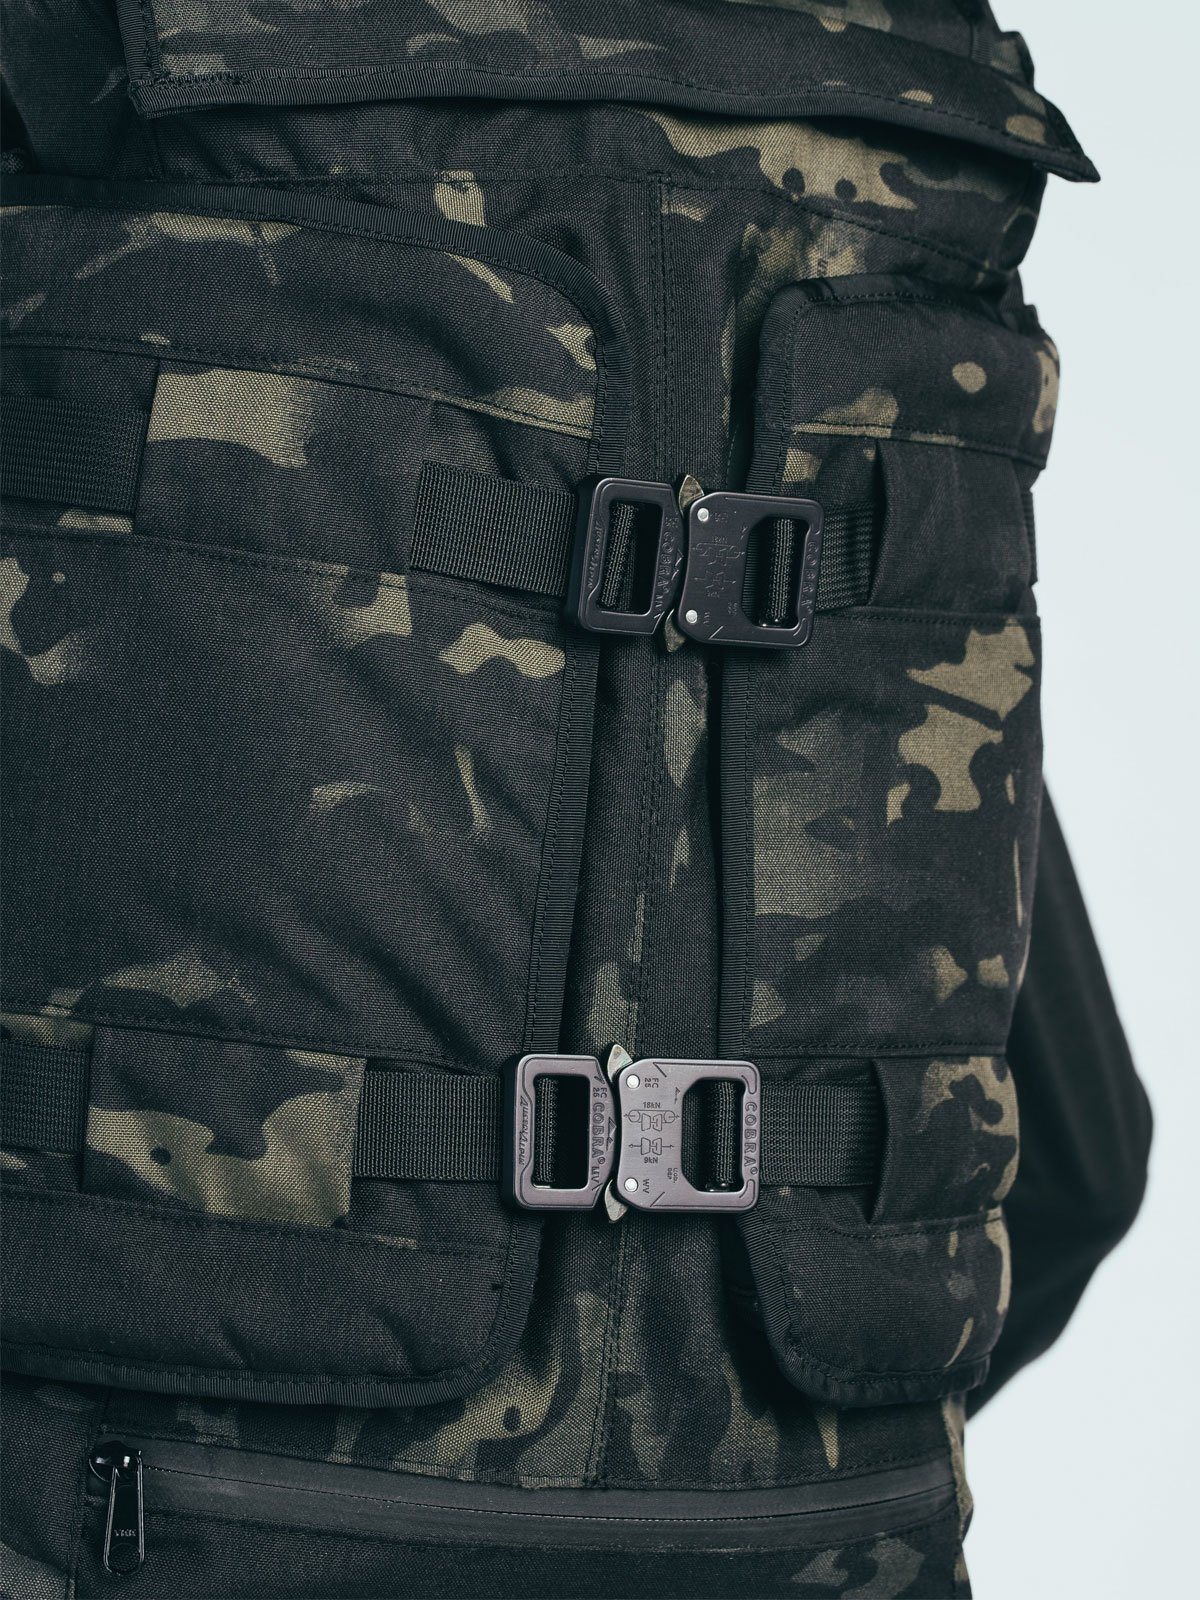 Cobra® Buckle Set: HT500 & Black Camo Rhake från Mission Workshop - Väskor och tekniska kläder för vädertätning - San Francisco & Los Angeles - Byggda för att tåla - Garanterade för alltid